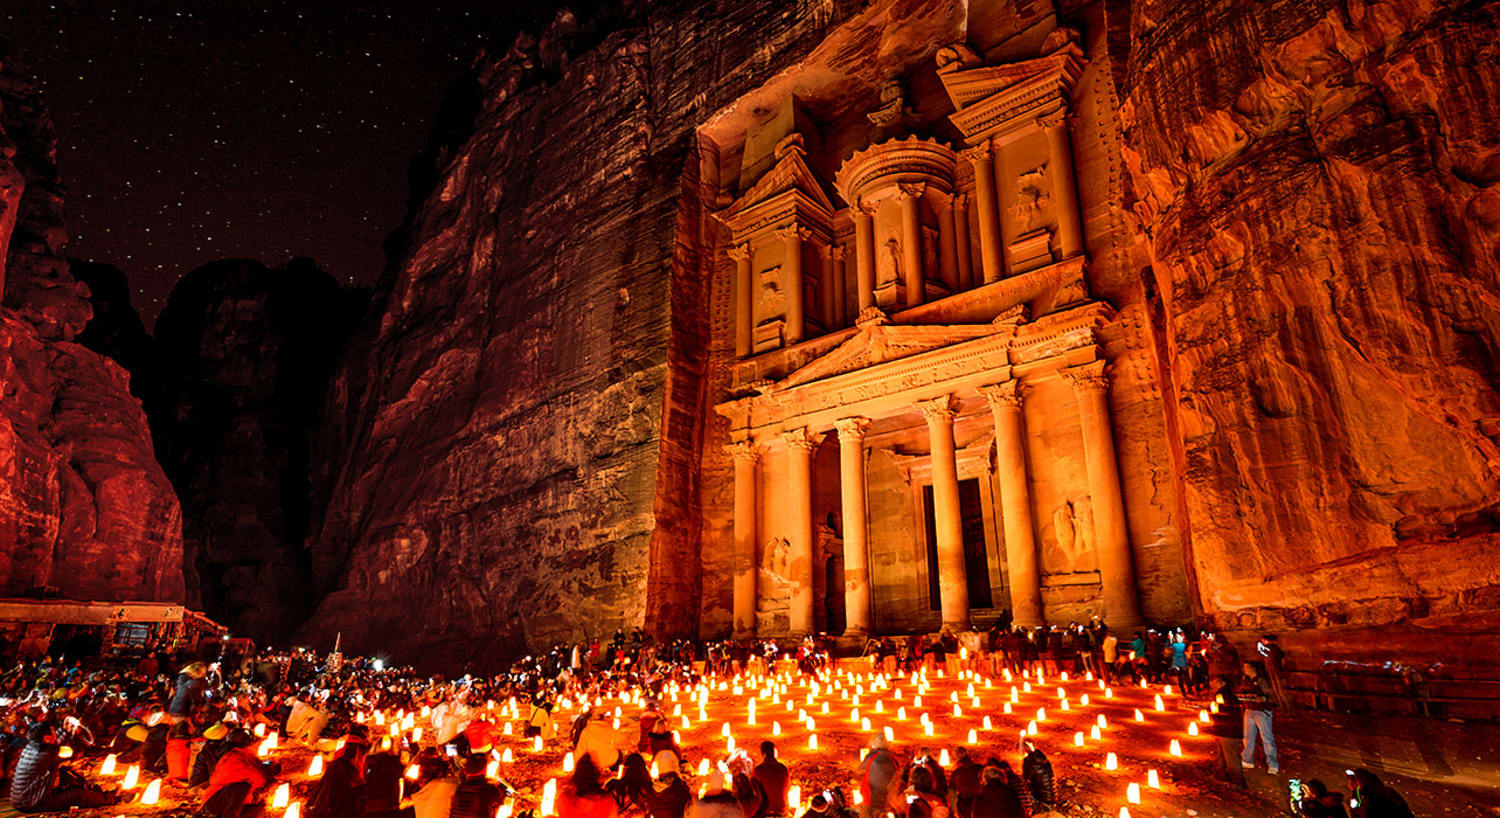 BATA BATANI: Petra in Jordan